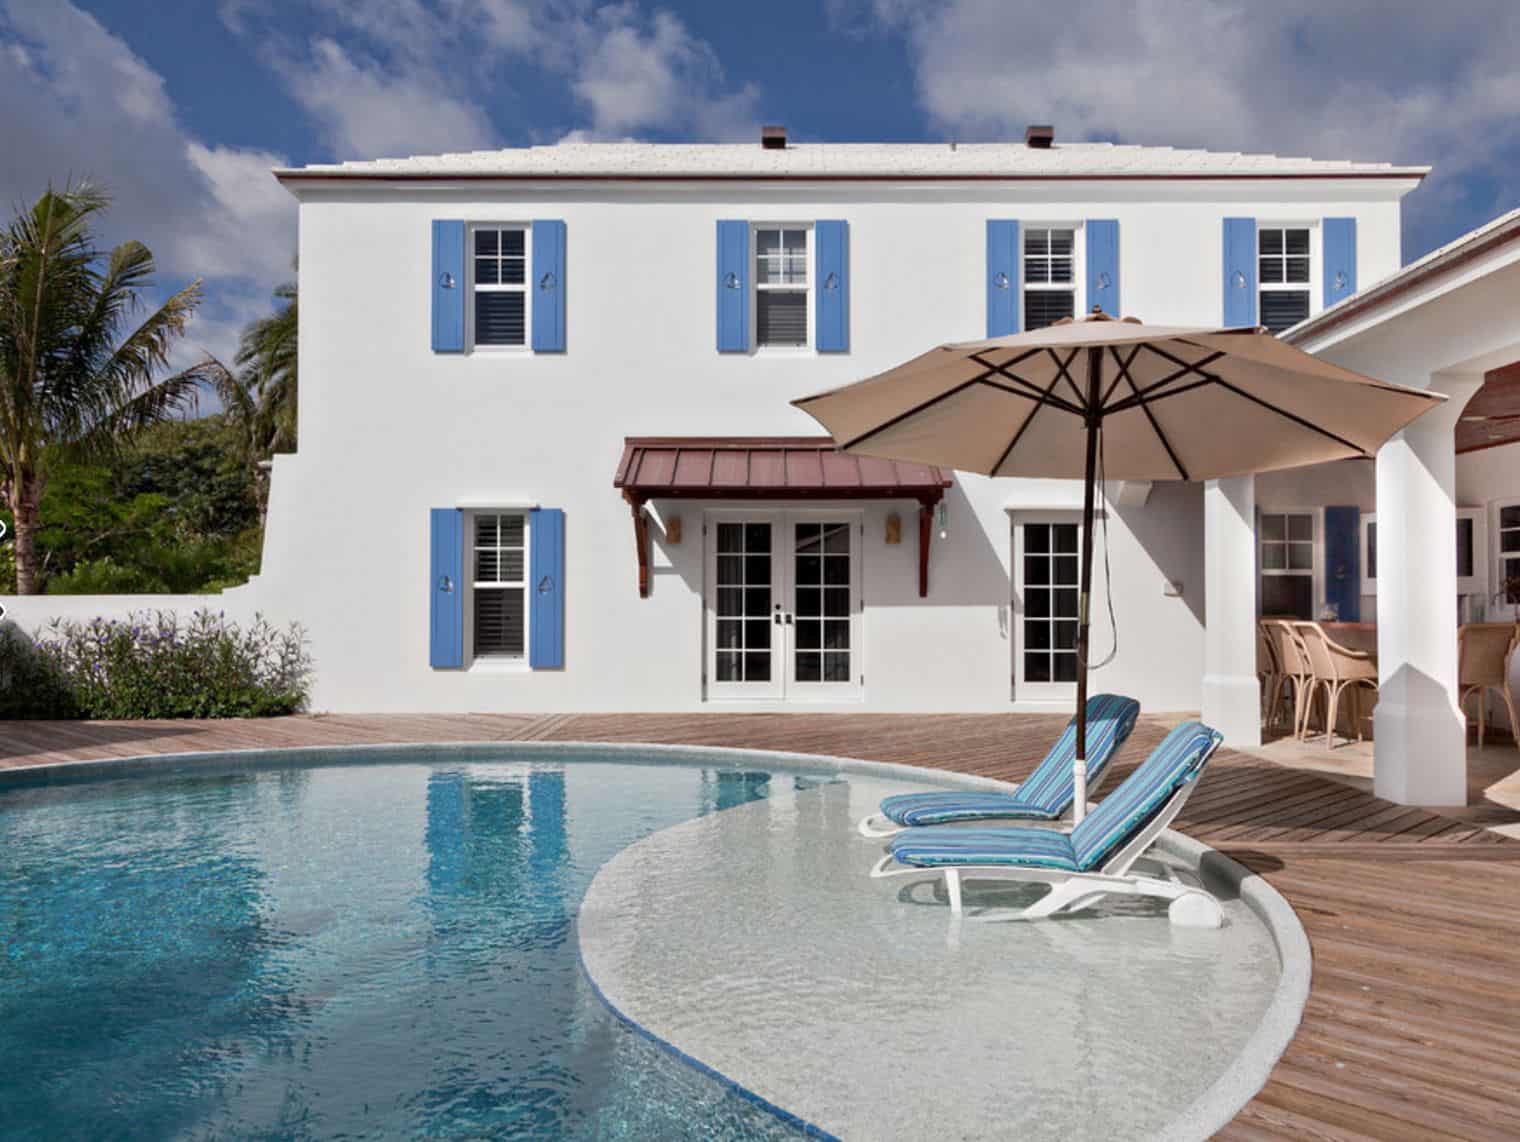 Colonial bermuda residence pool